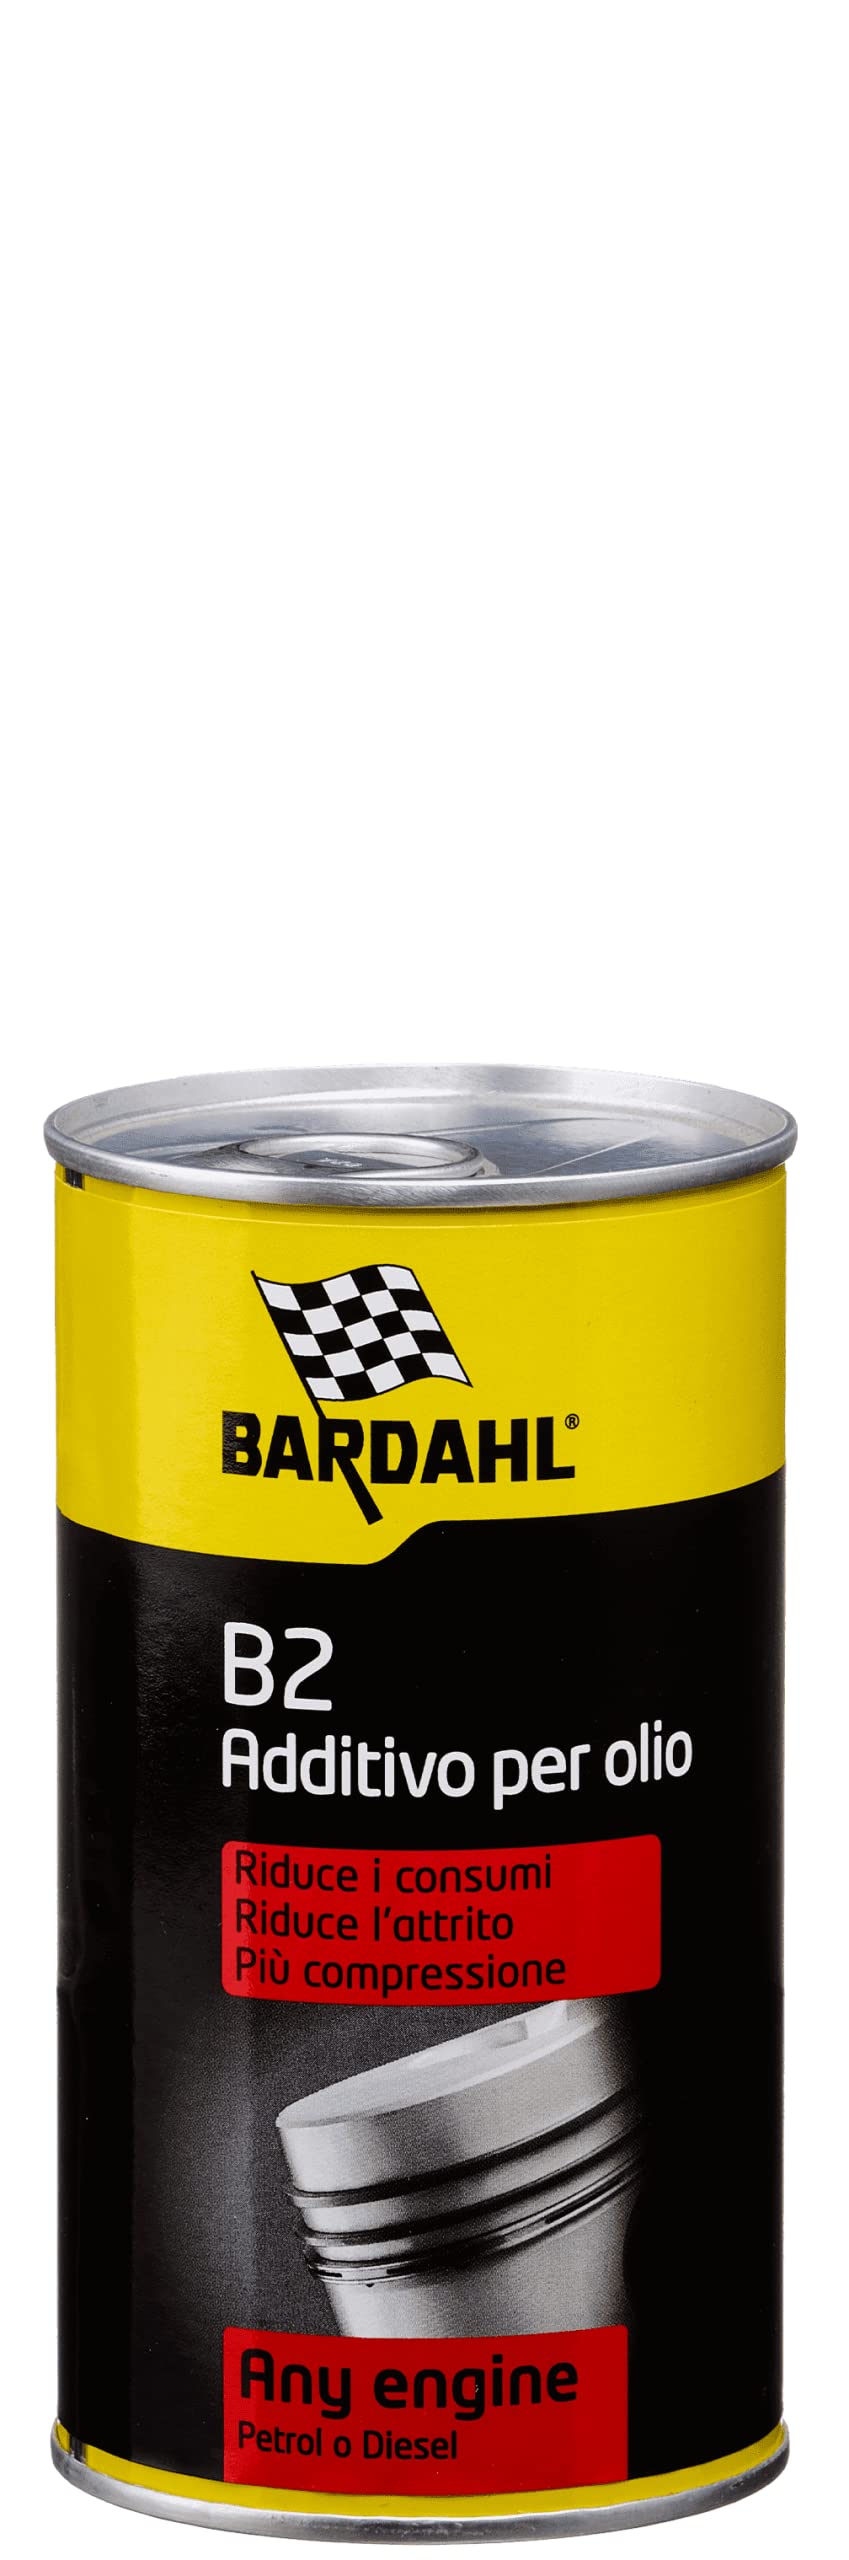 Bardahl - Ölzusatz B2, geeignet für alle Benzin- und Dieselmotoren, verbessert die Motorleistung, 300 ml